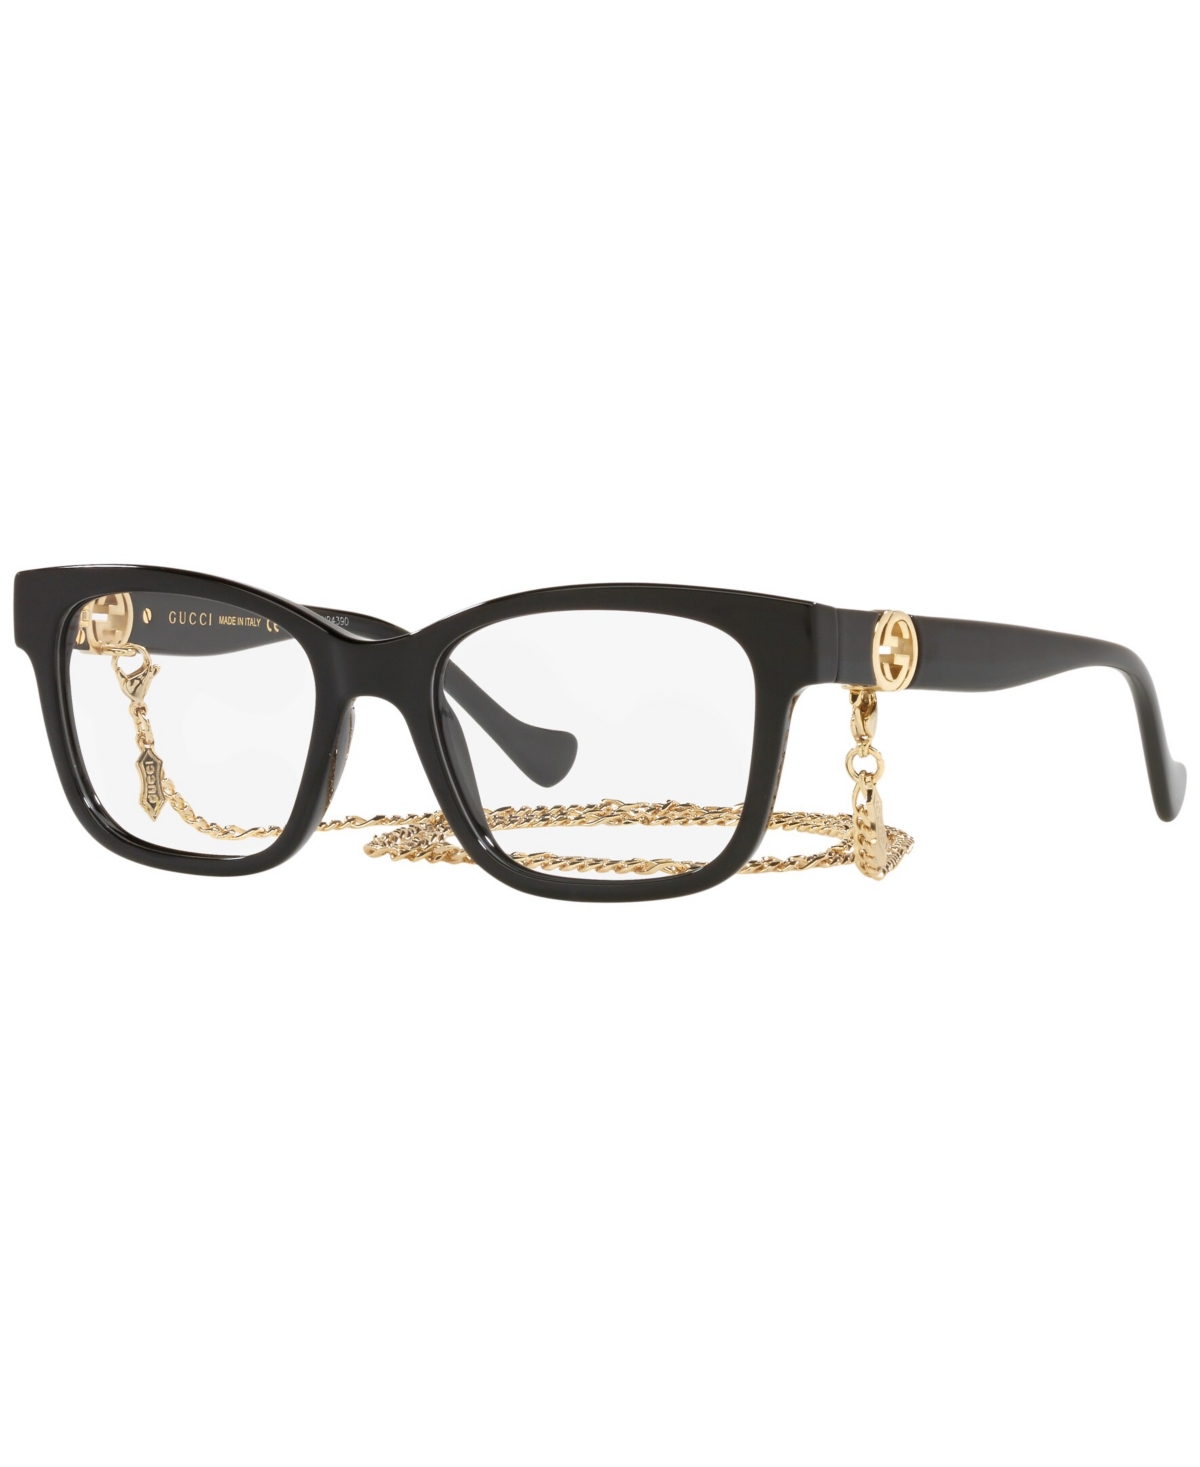 GG1025O Women's Rectangle Eyeglasses - Black